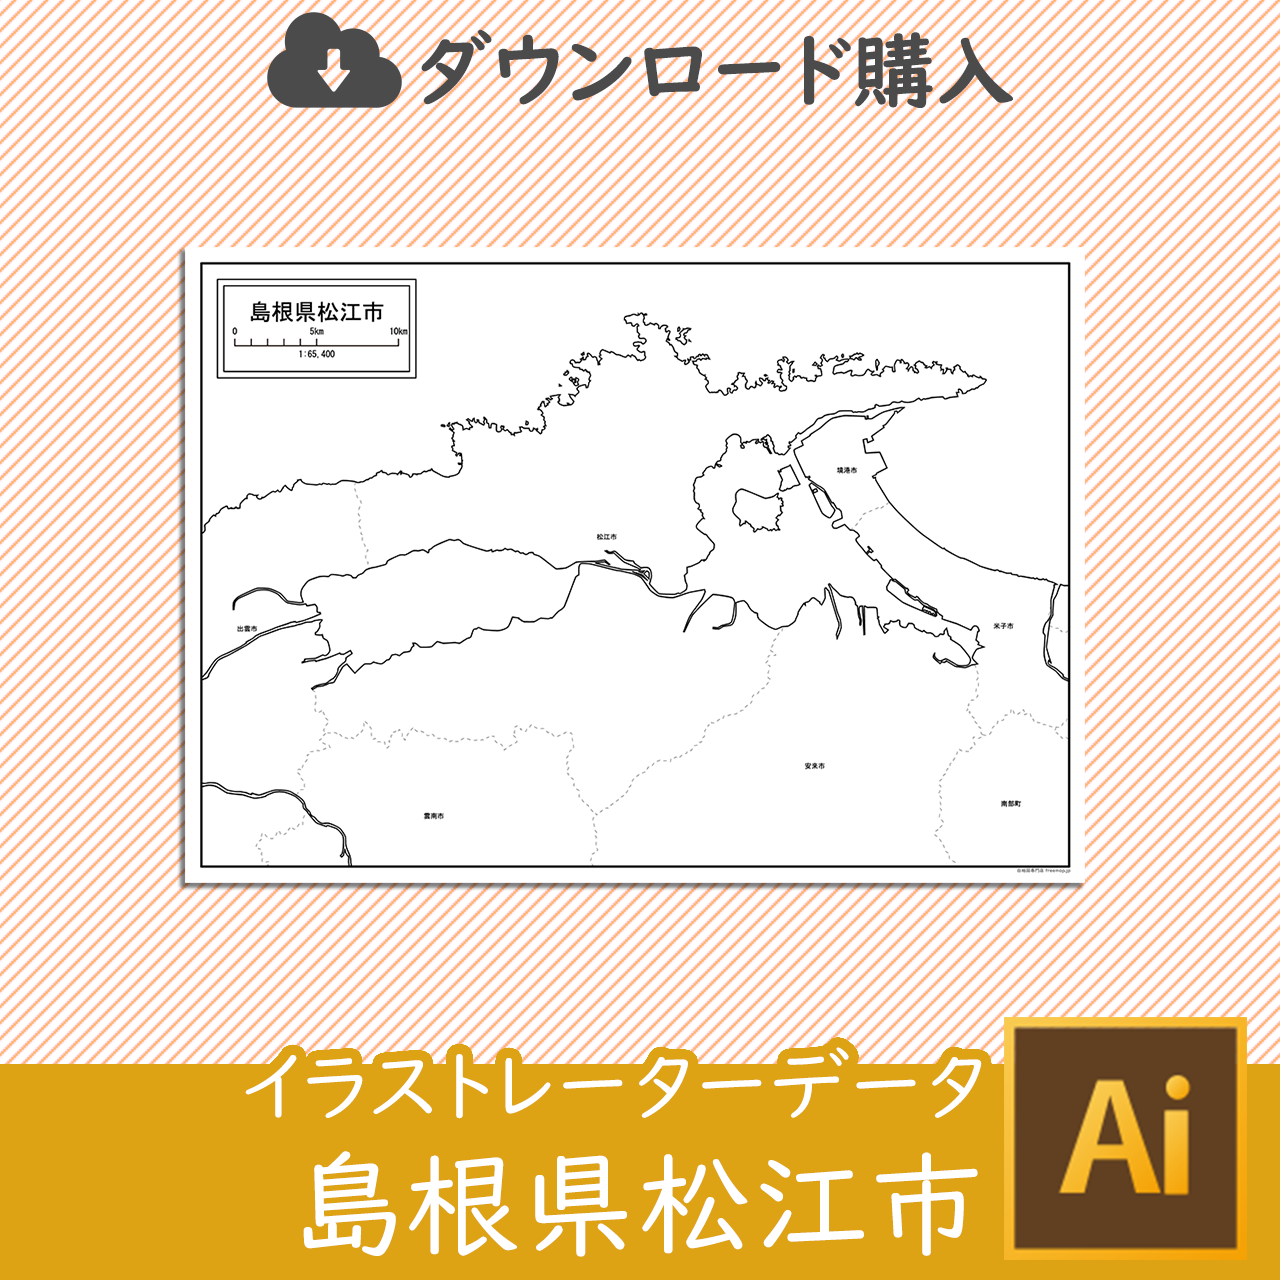 松江市のaiデータのサムネイル画像